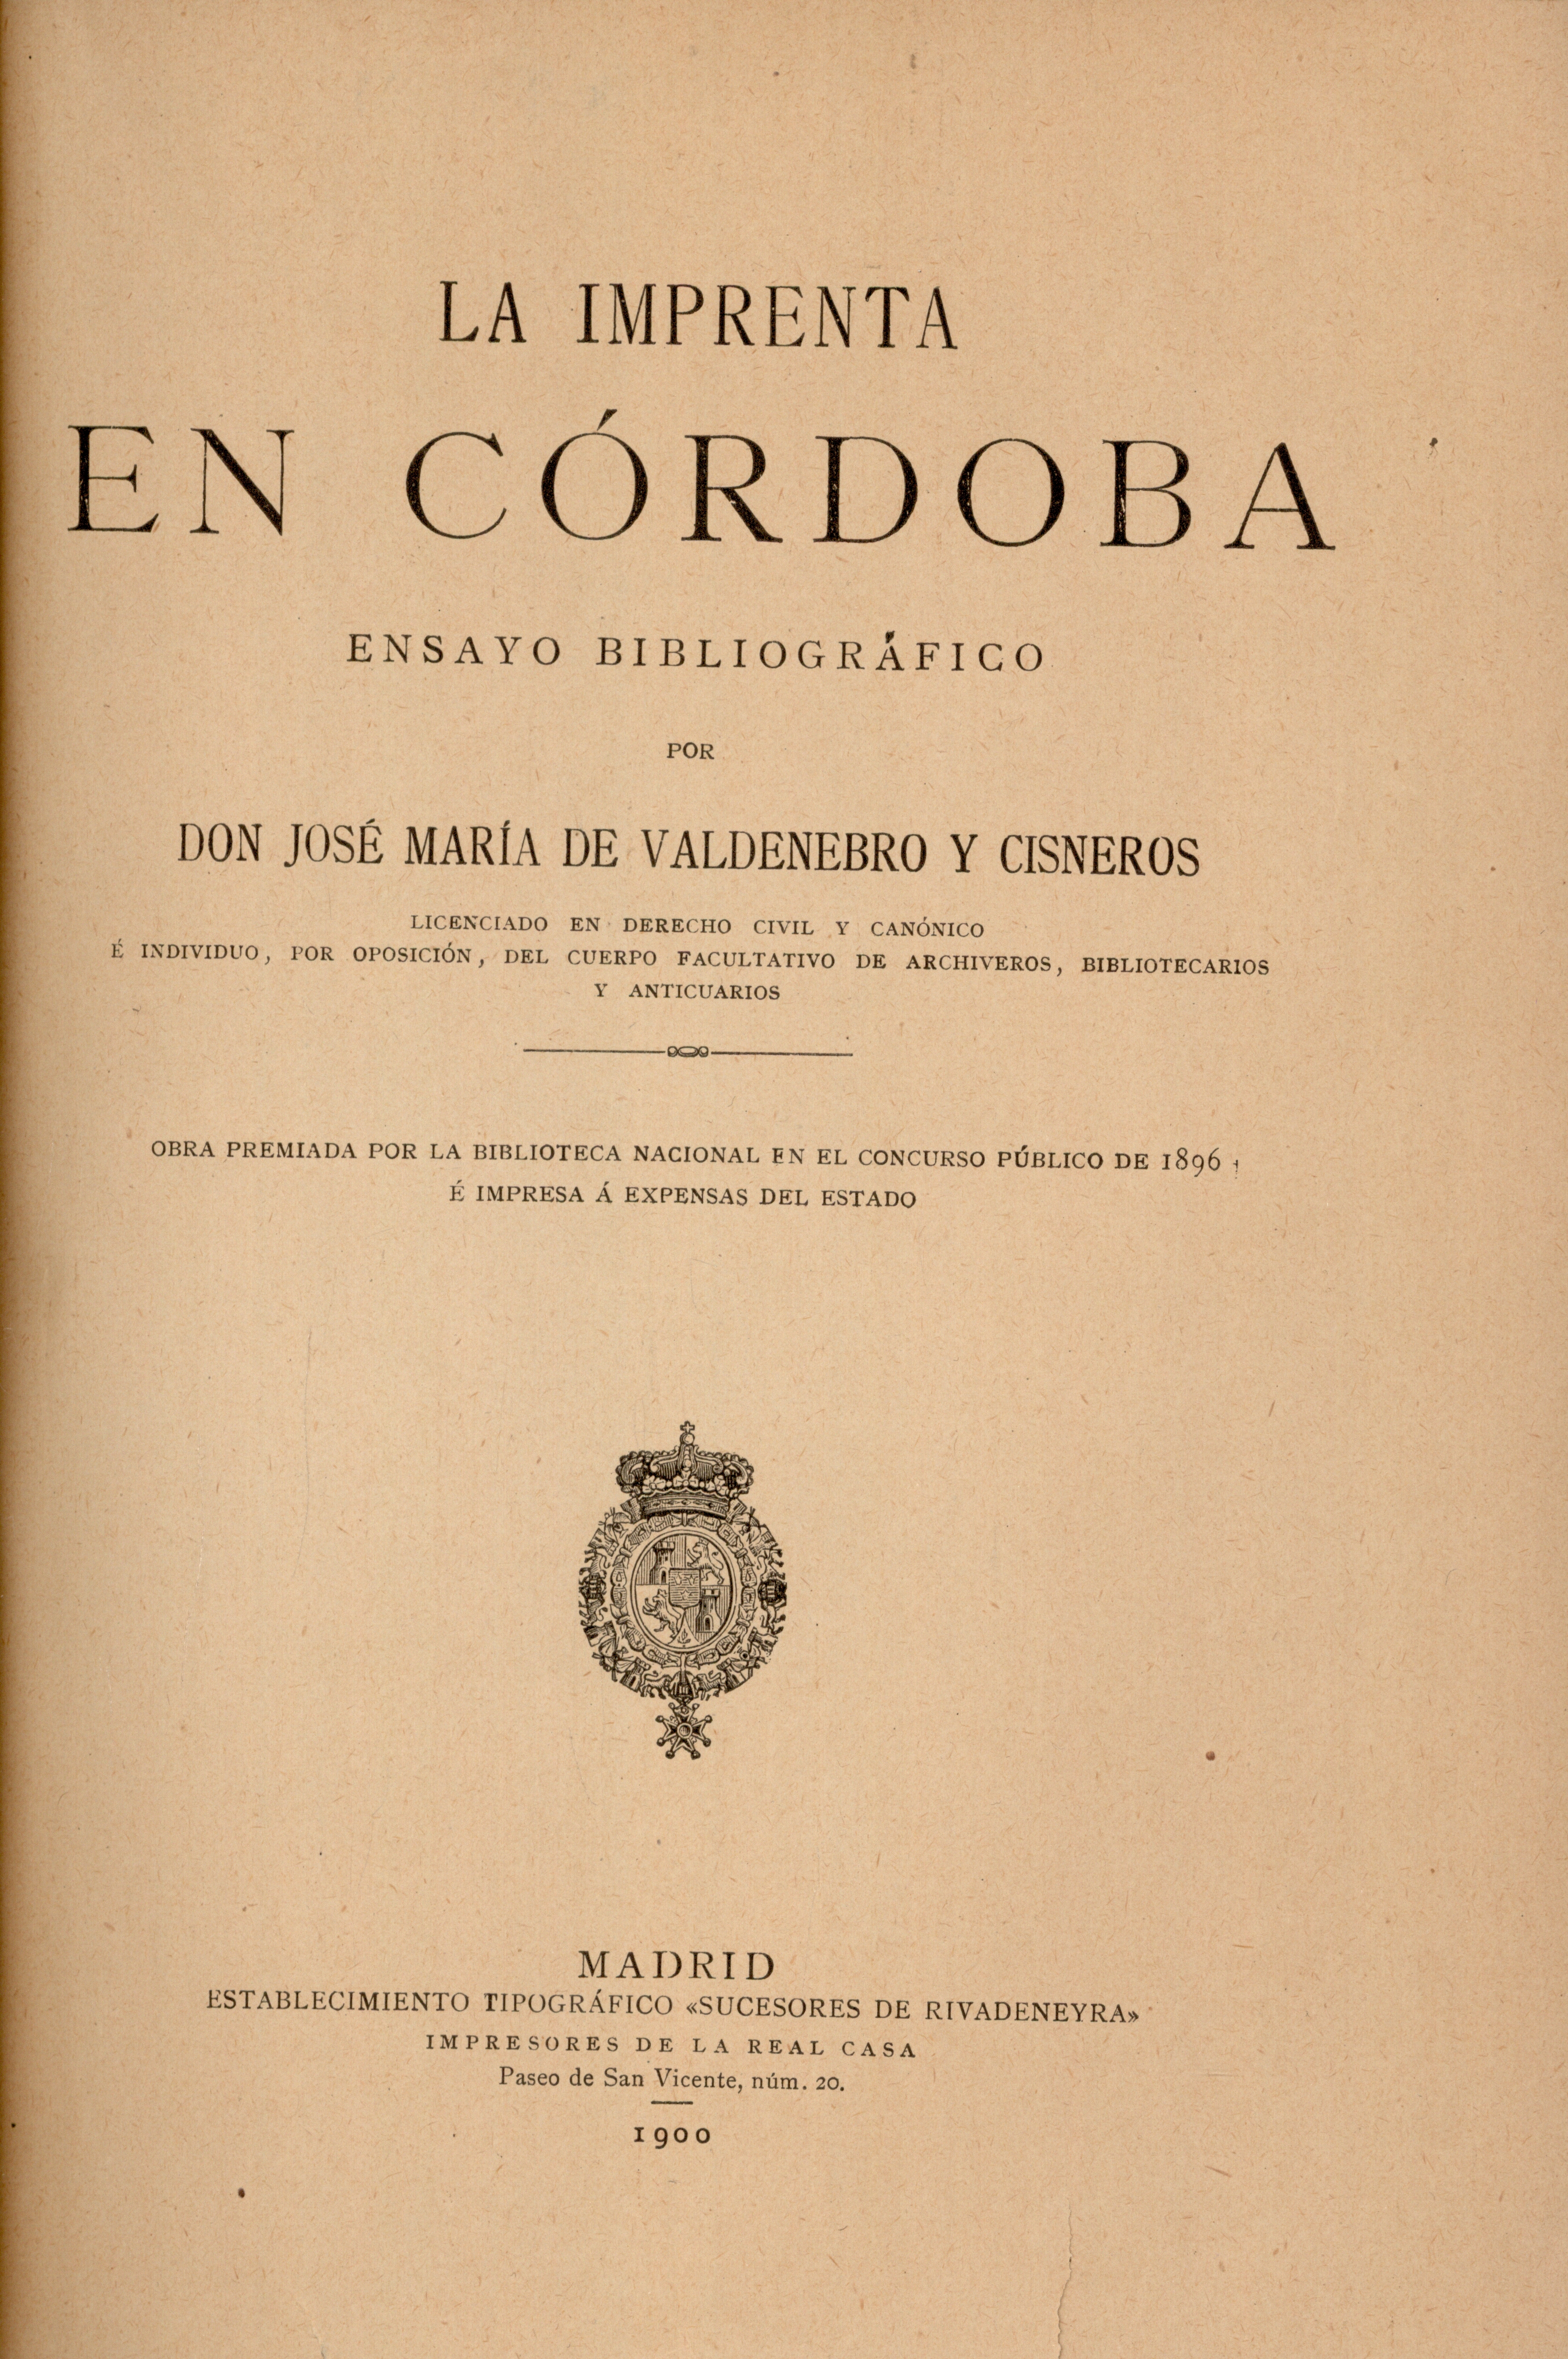 La imprenta en Córdoba: ensayo bibliográfico, por don José María de Valdenebro y Cisneros, Madrid, 1900